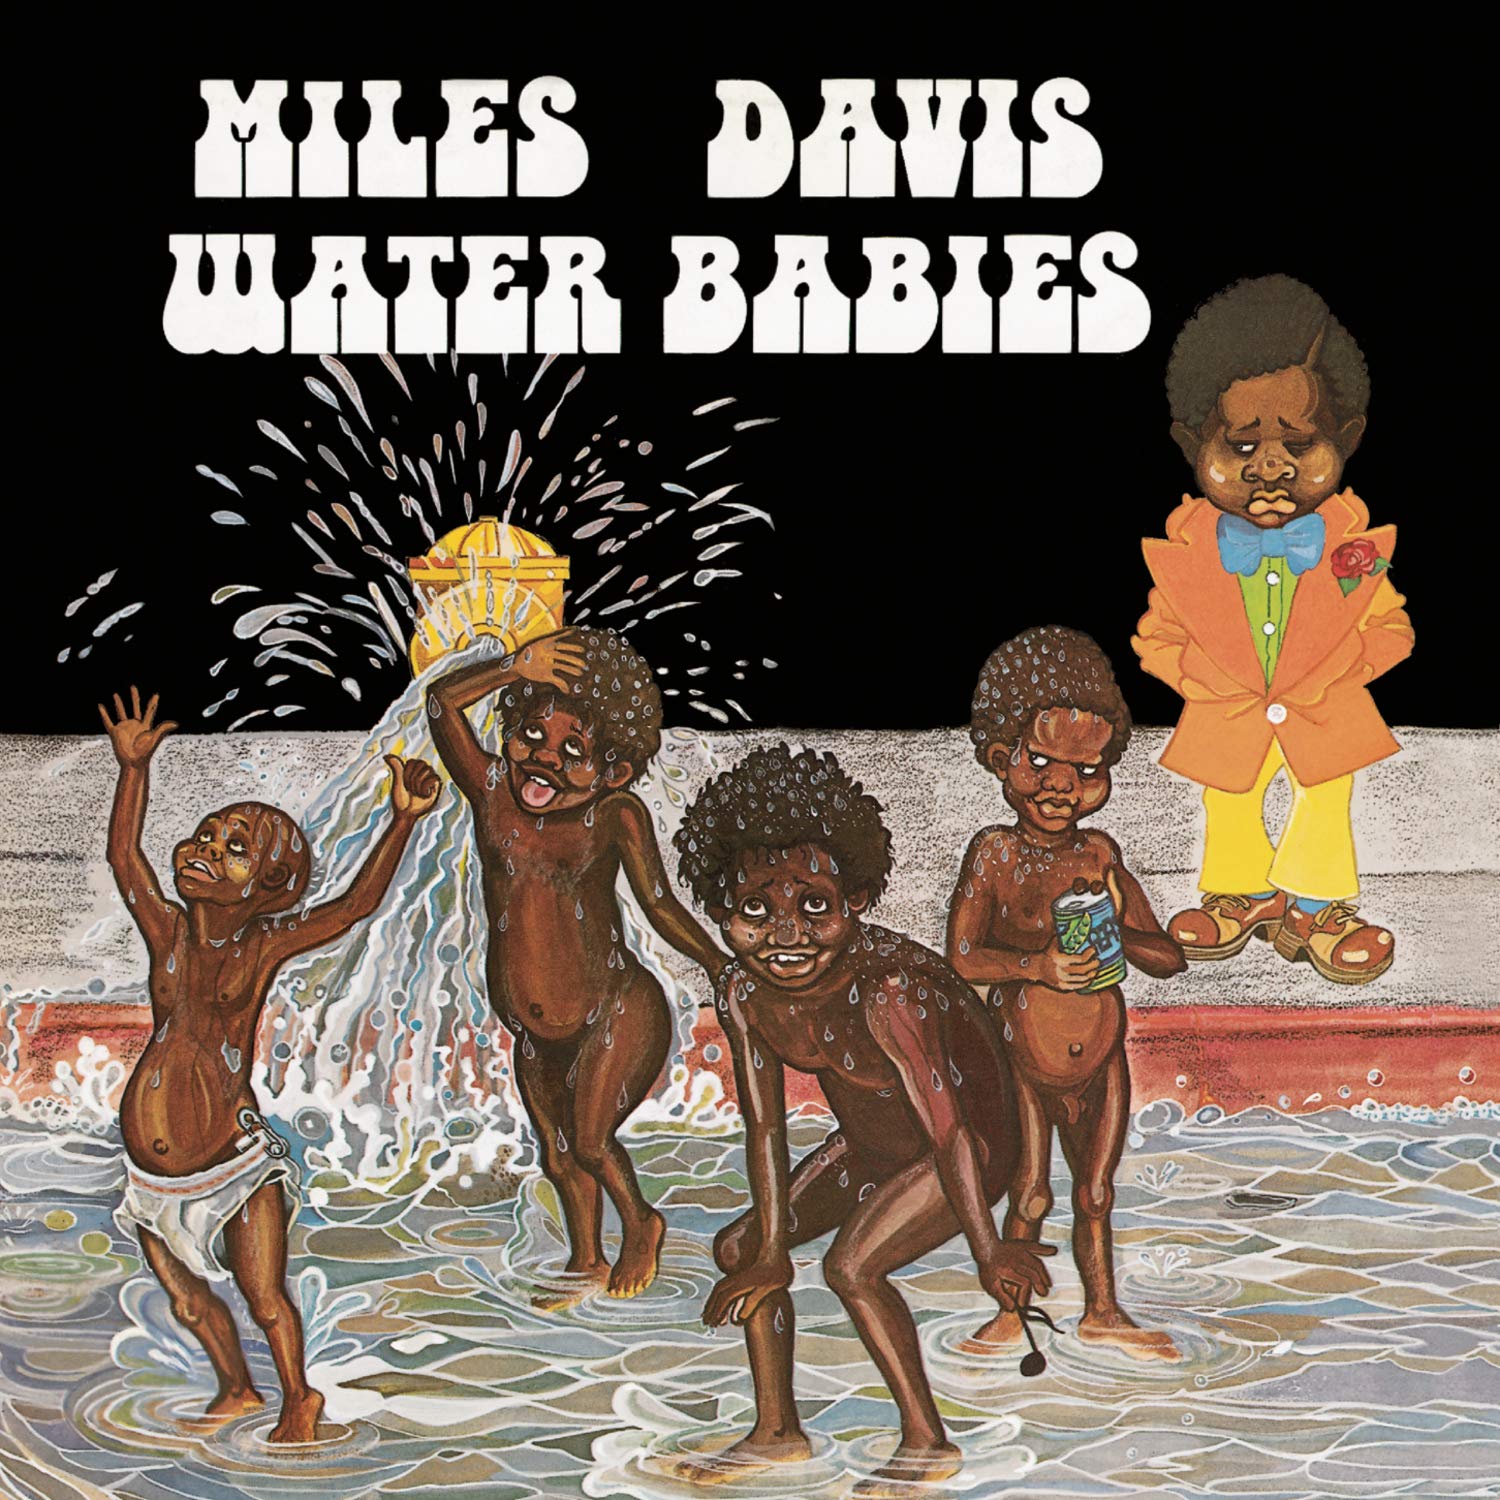 MILES DAVIS - WATER BABIES Vinyl LP